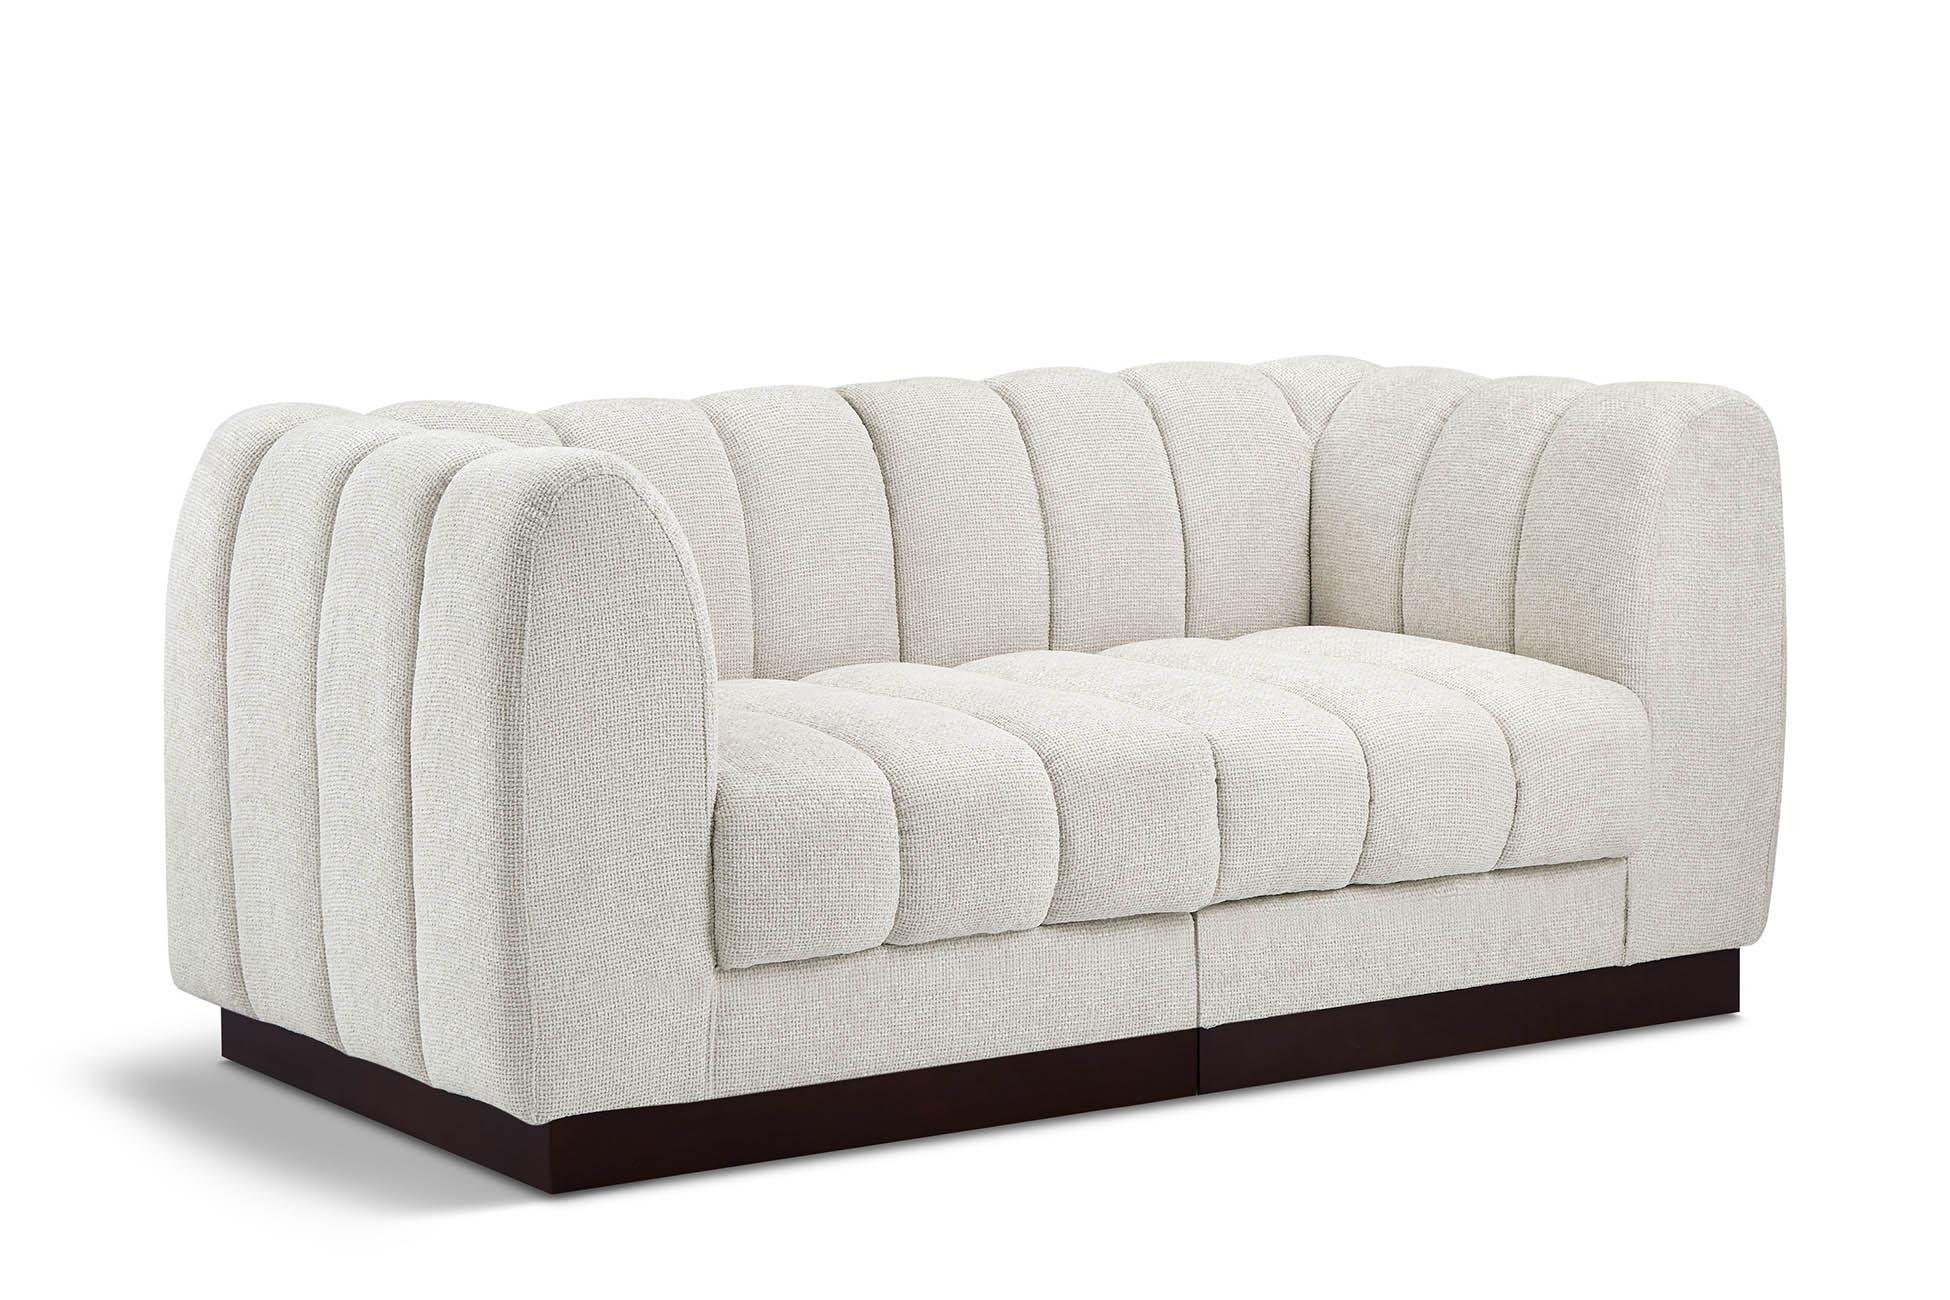 Contemporary, Modern Modular Sofa QUINN 124Cream-S69 124Cream-S69 in Cream Chenille